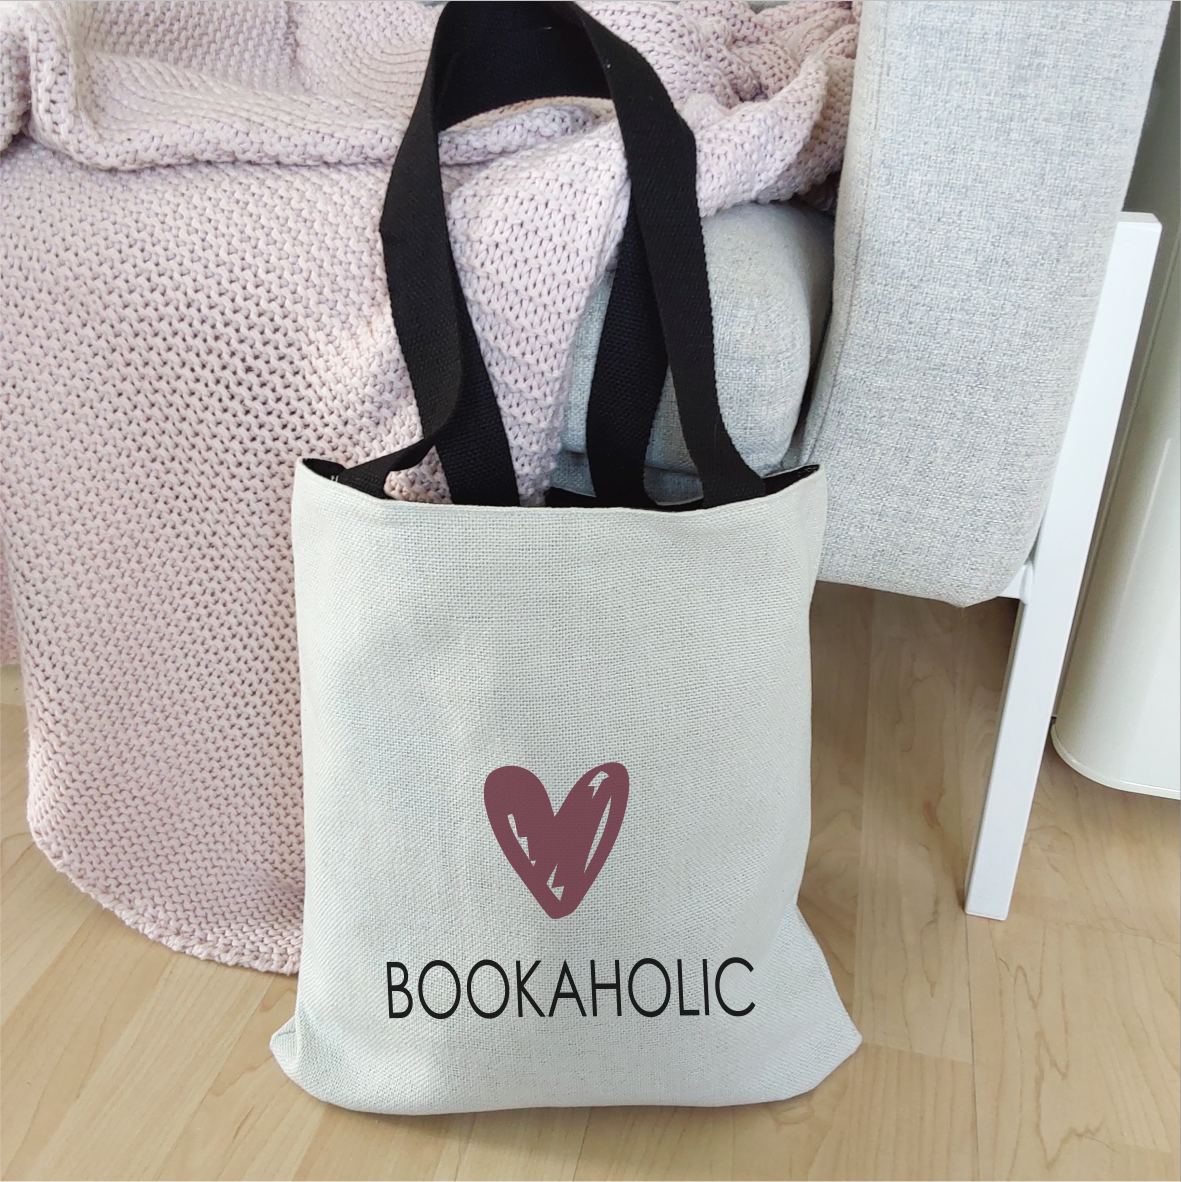 Einkaufstasche "Bookaholic"